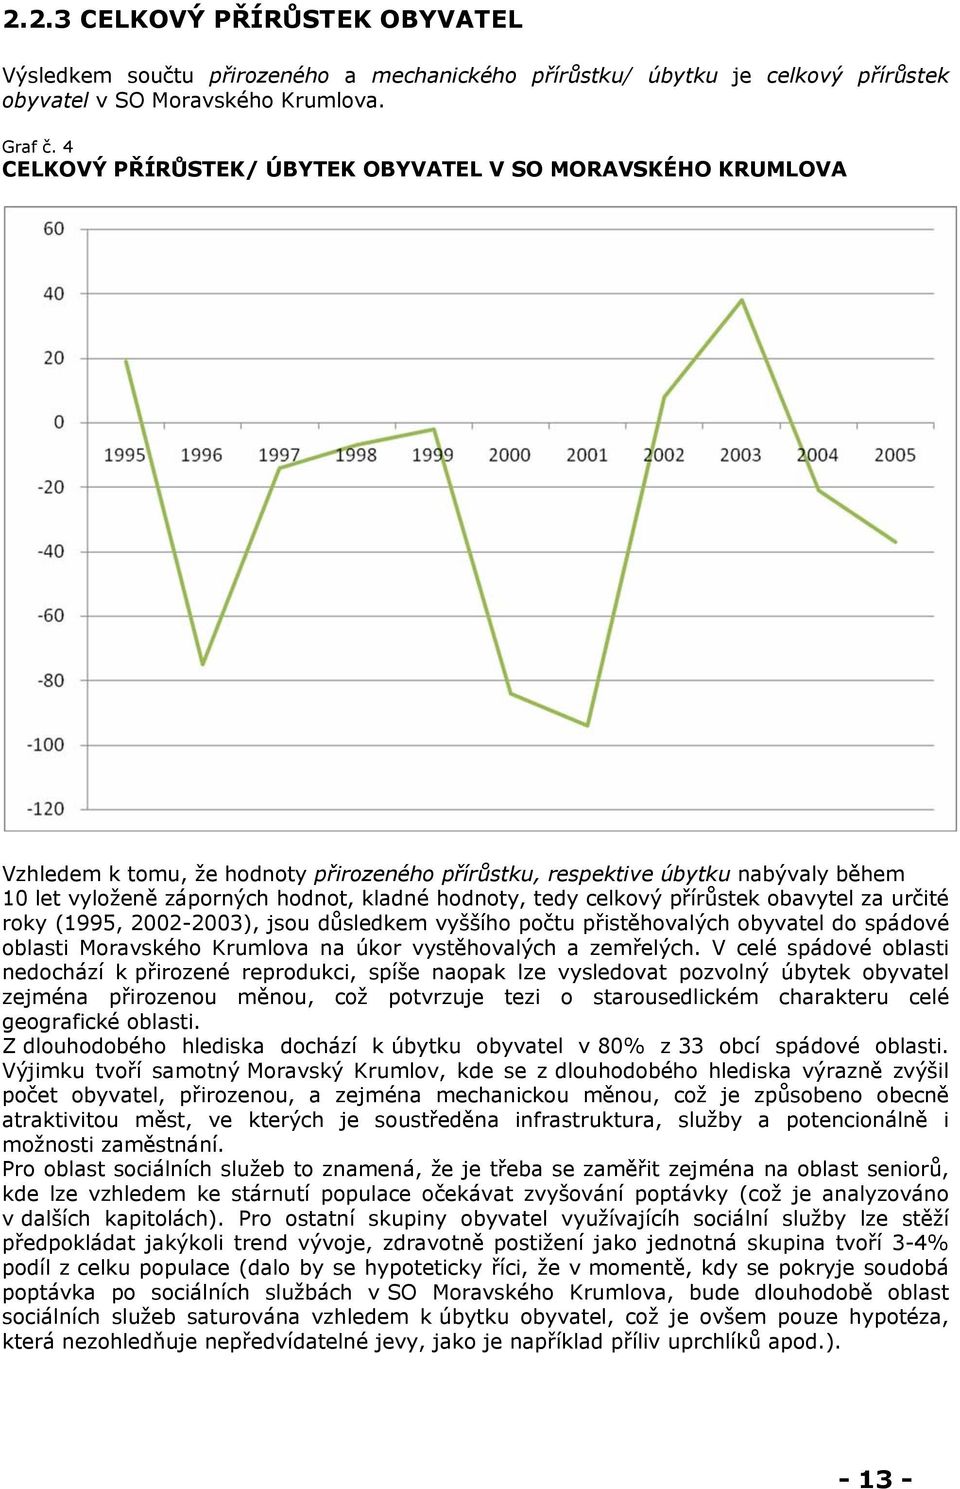 tedy celkový přírůstek obavytel za určité roky (1995, 2002-2003), jsou důsledkem vyššího počtu přistěhovalých obyvatel do spádové oblasti Moravského Krumlova na úkor vystěhovalých a zemřelých.